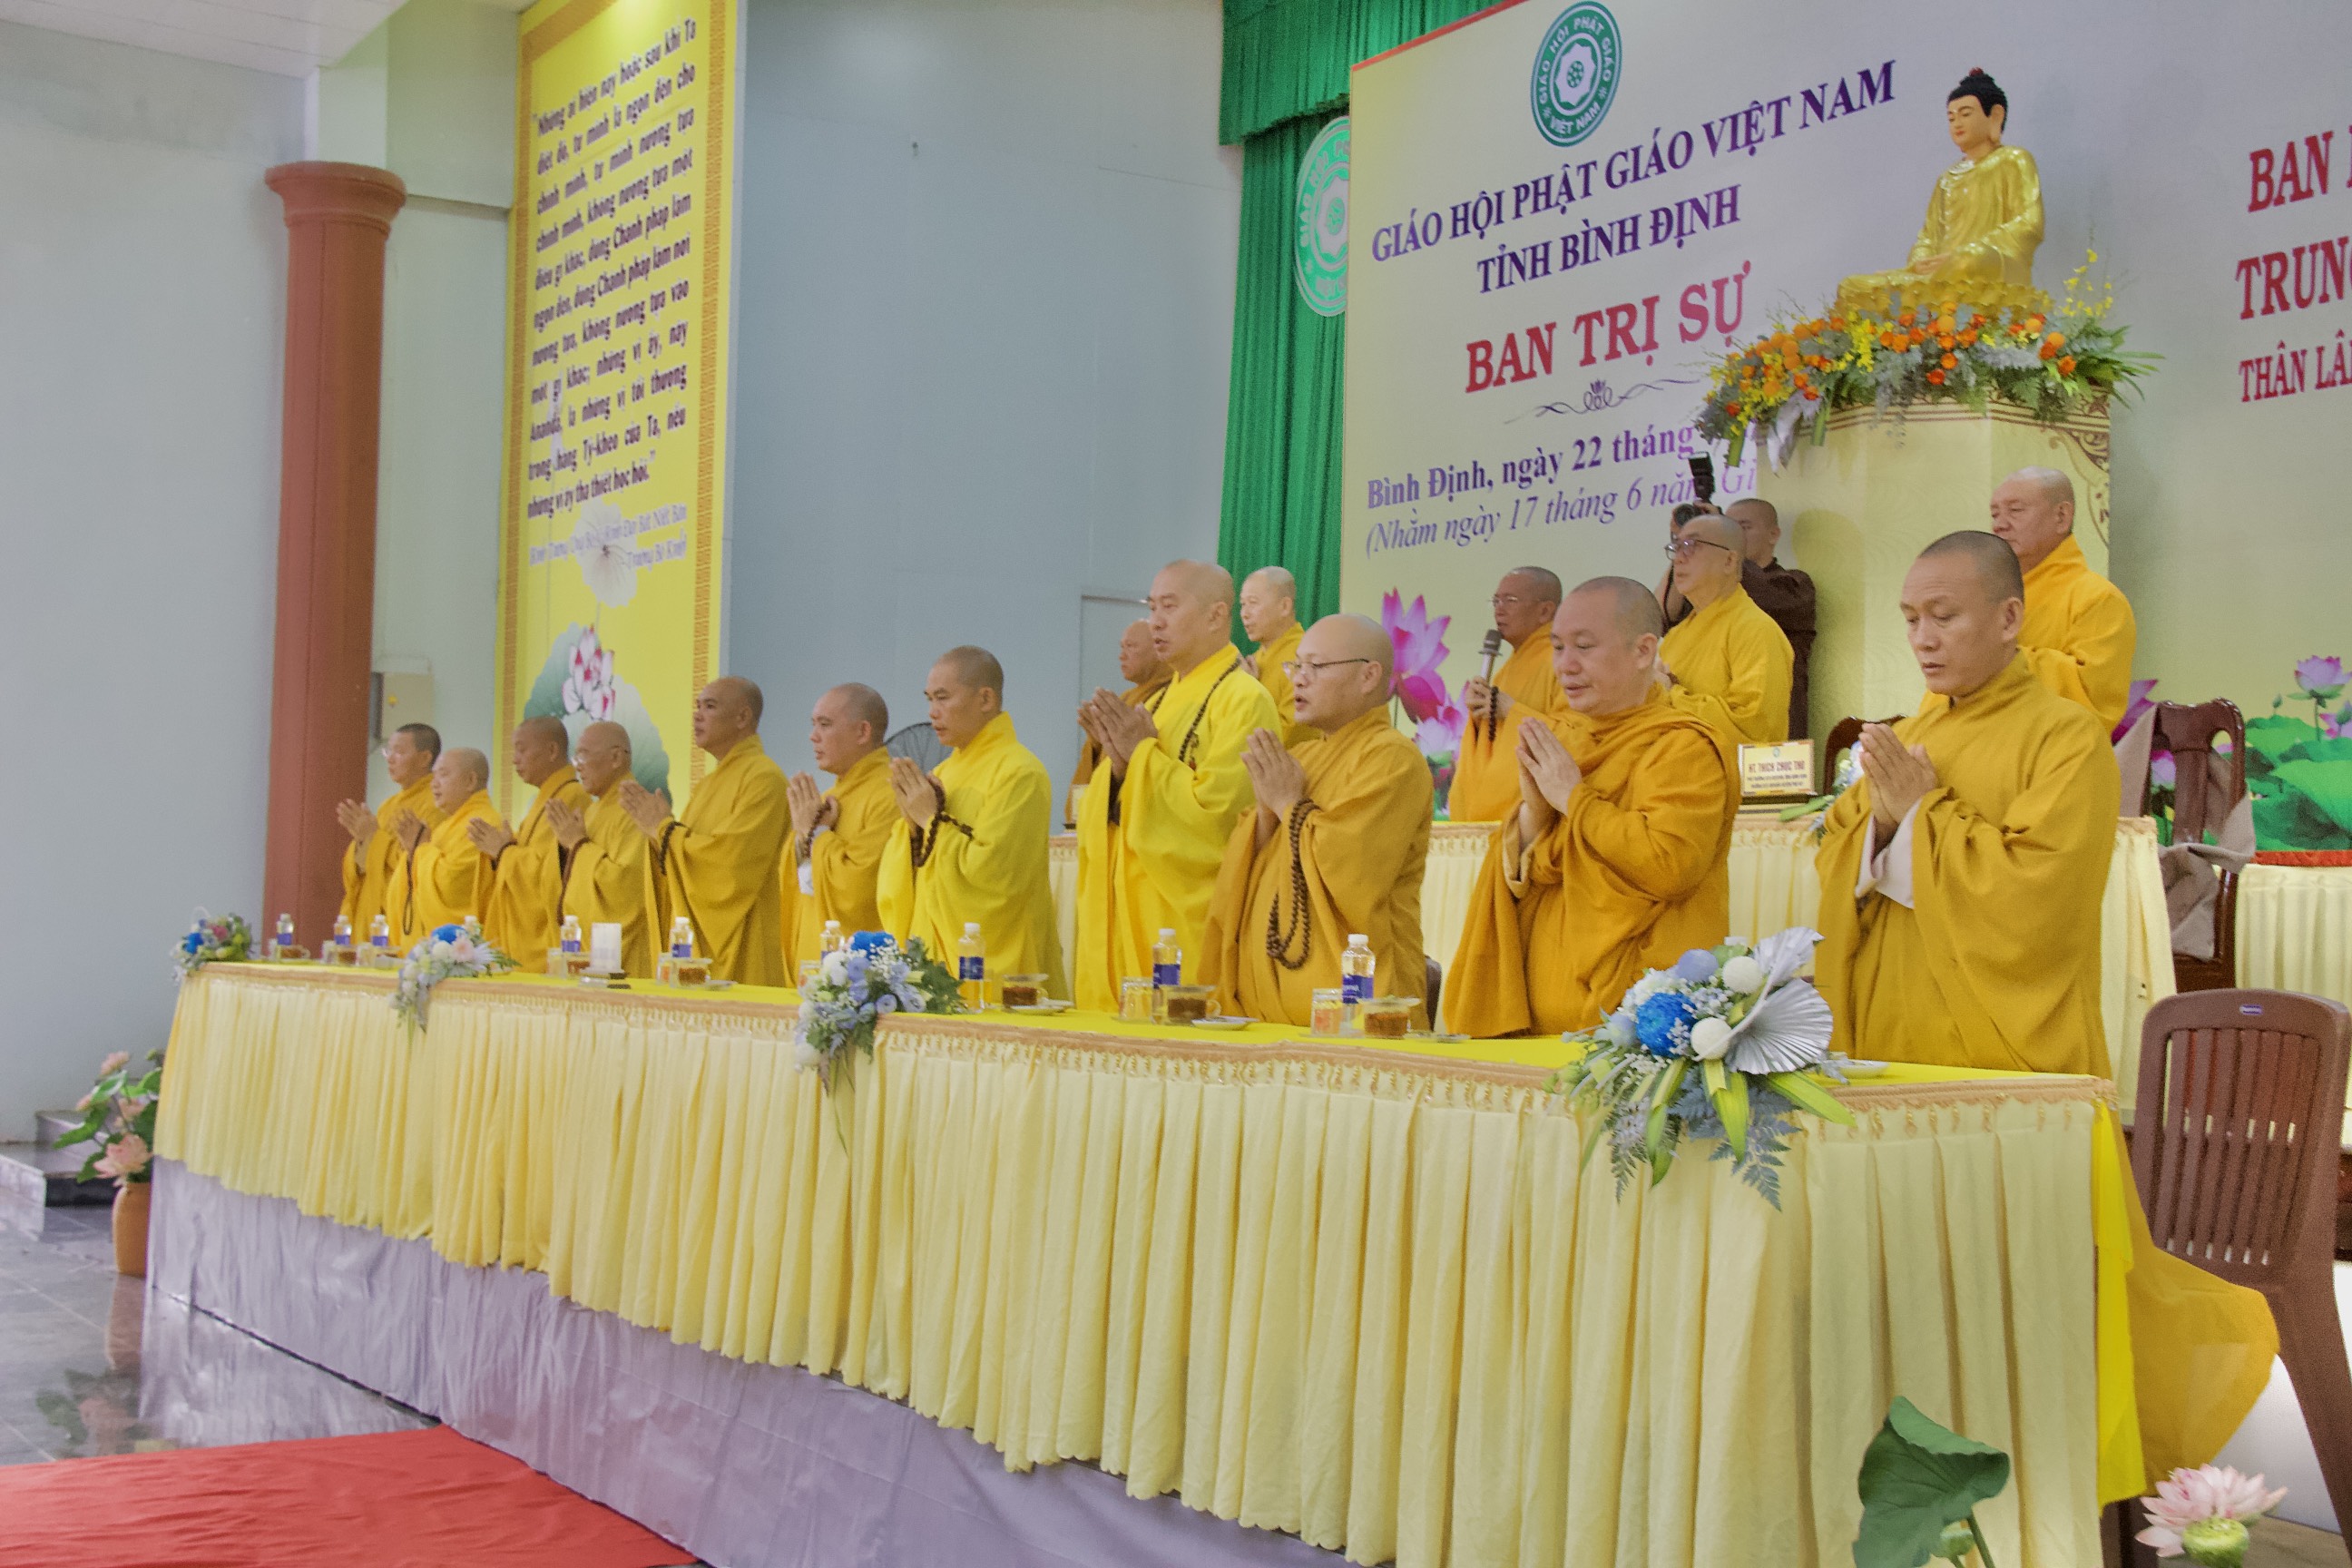 Ban Hoằng pháp và Ban Kinh tế Tài chính Trung ương thăm Ban Trị sự và hành giả an cư tại tỉnh Bình Định